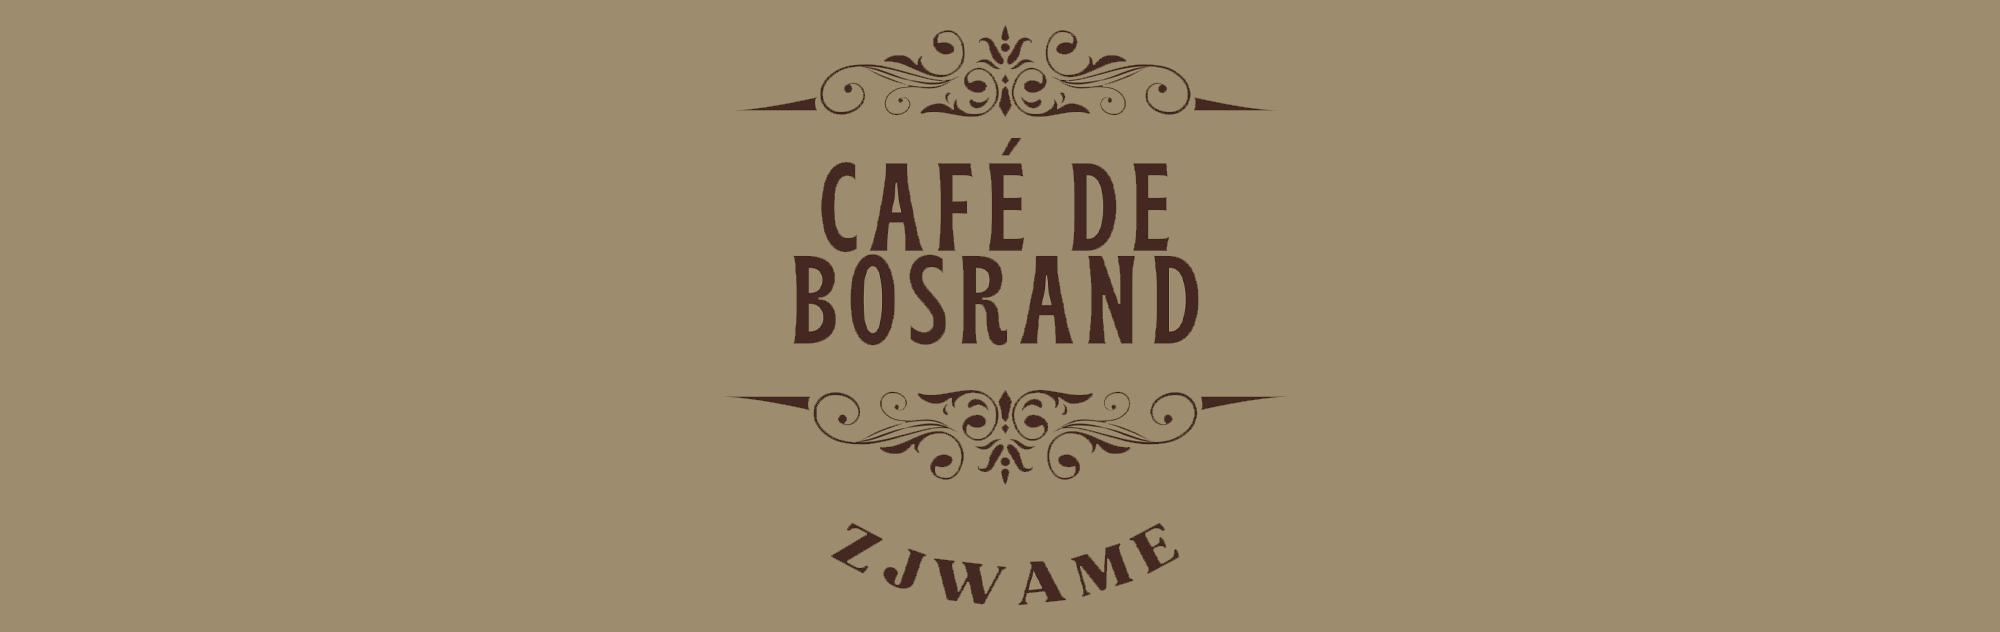 Café de Bosrand, Swalmen